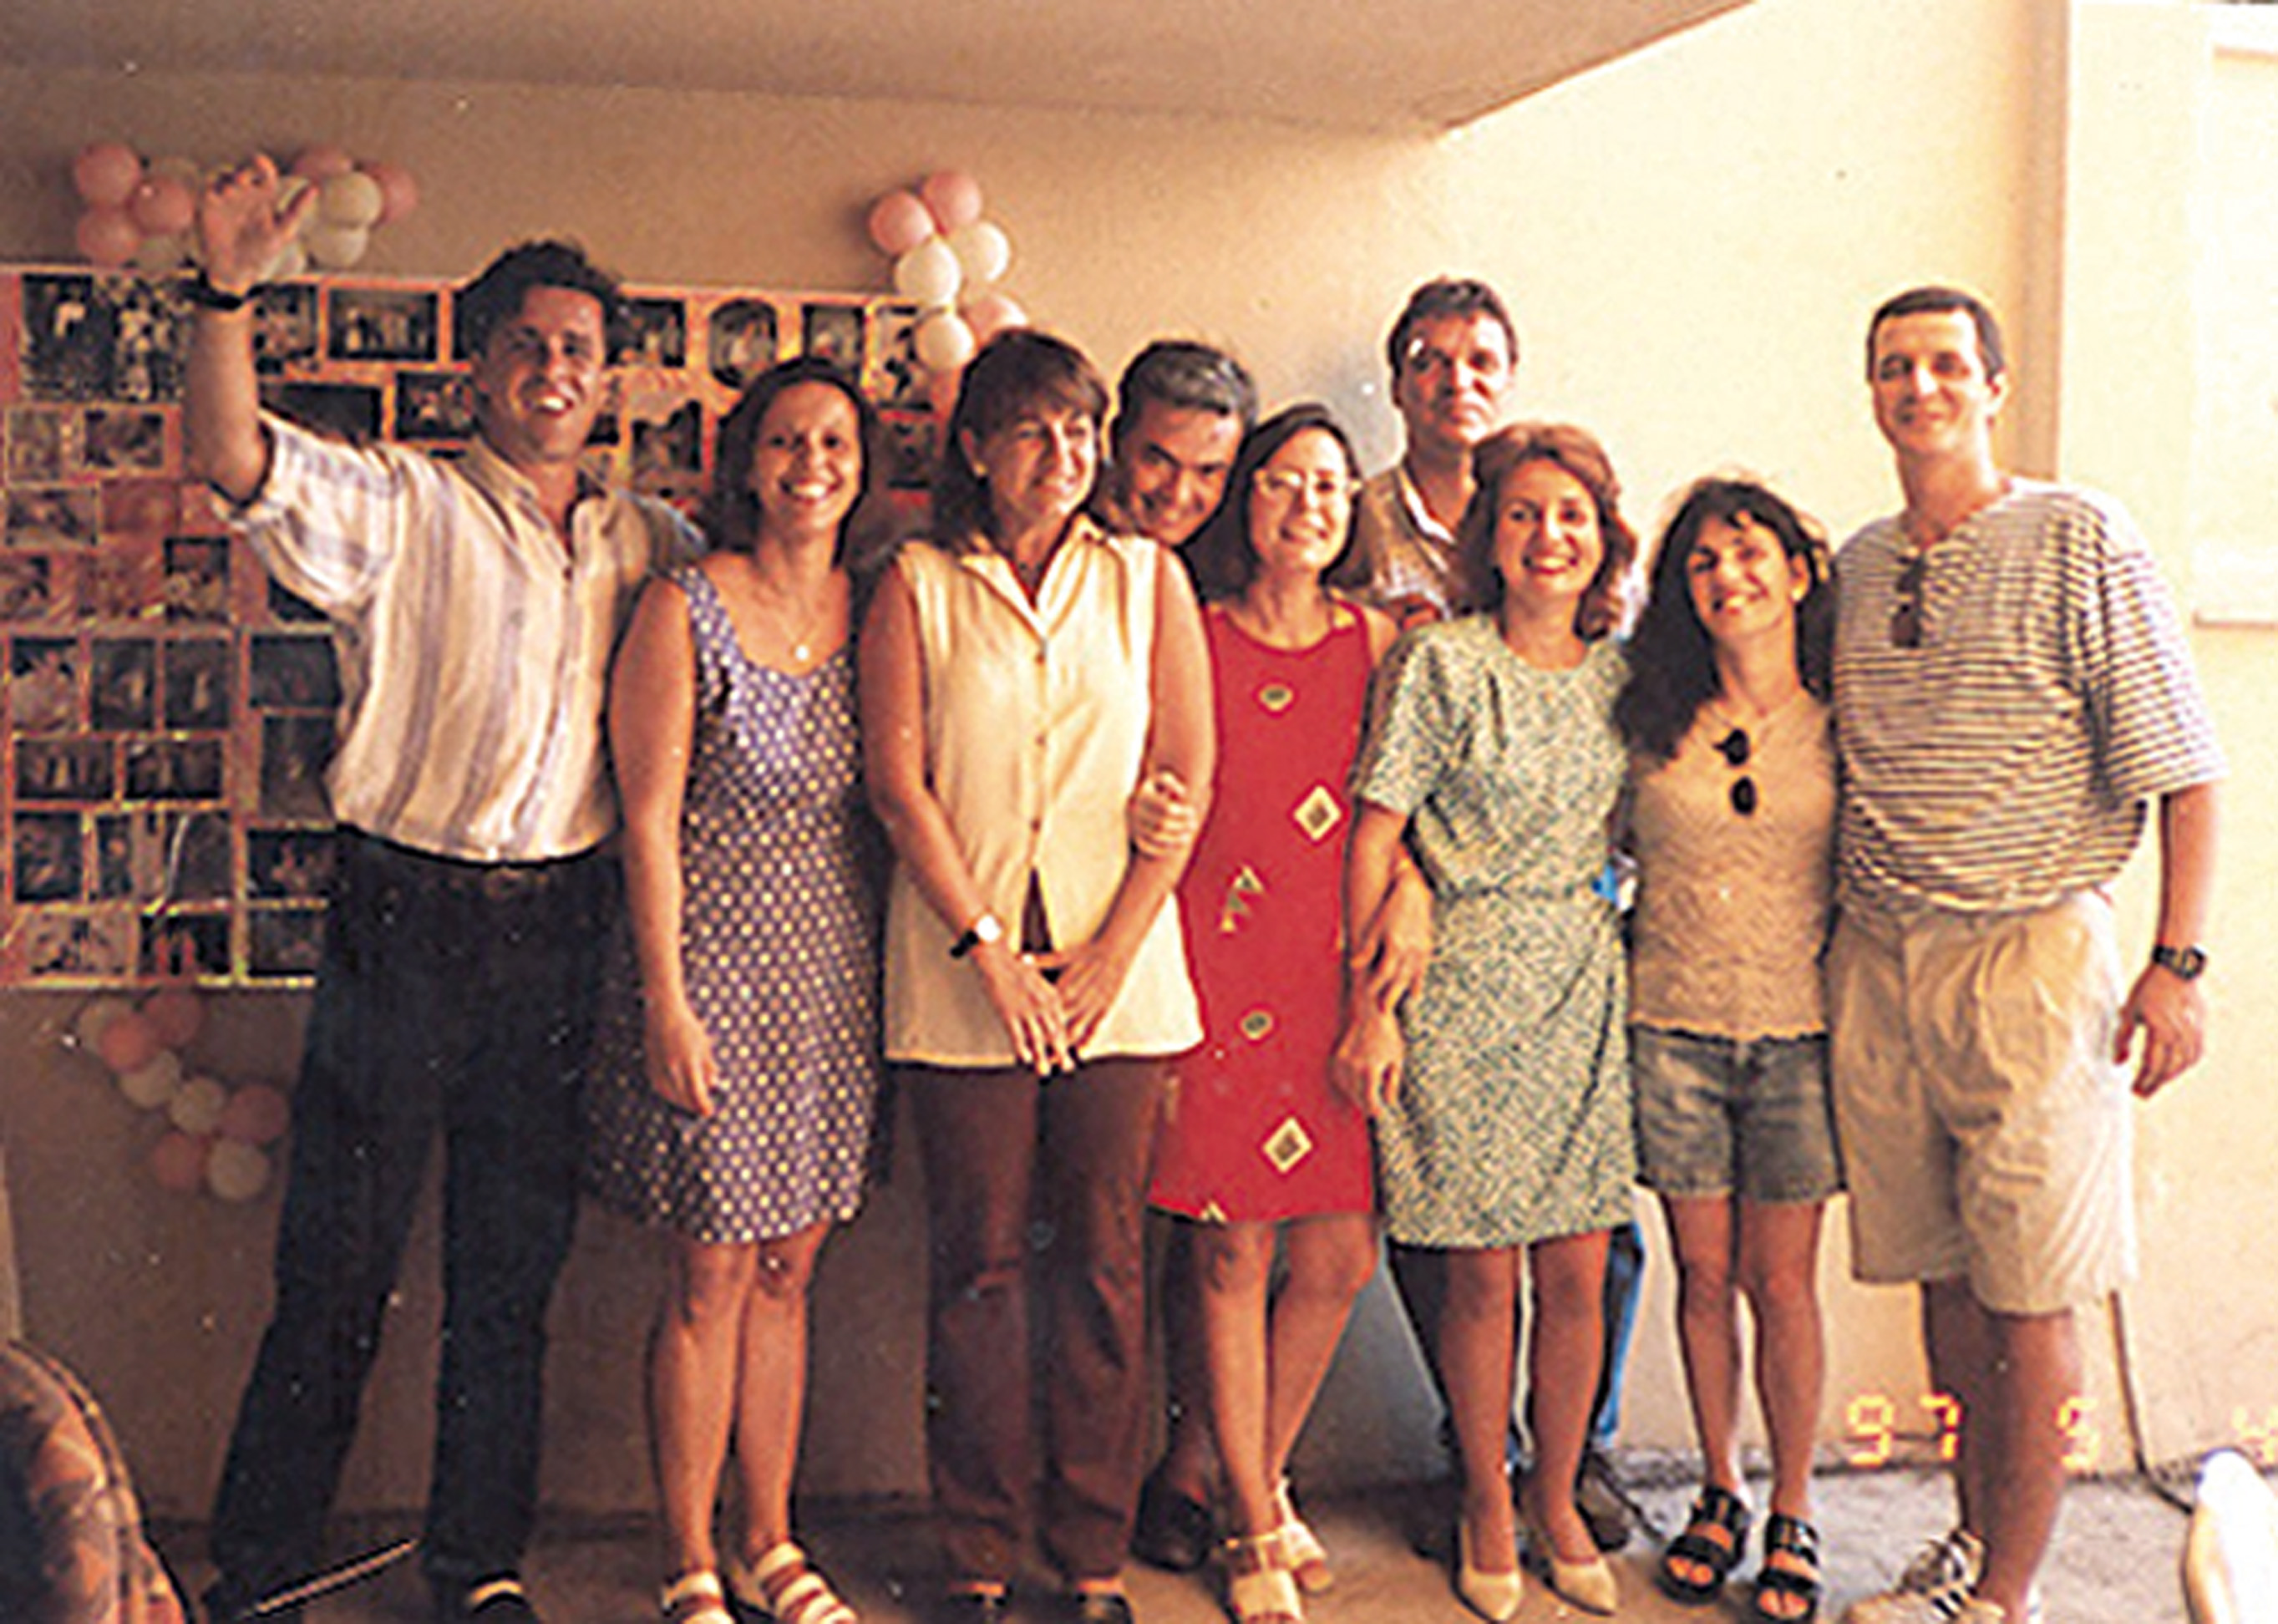 Comemorando os 40 anos com os irmãos, os primos e os pais, em 2000